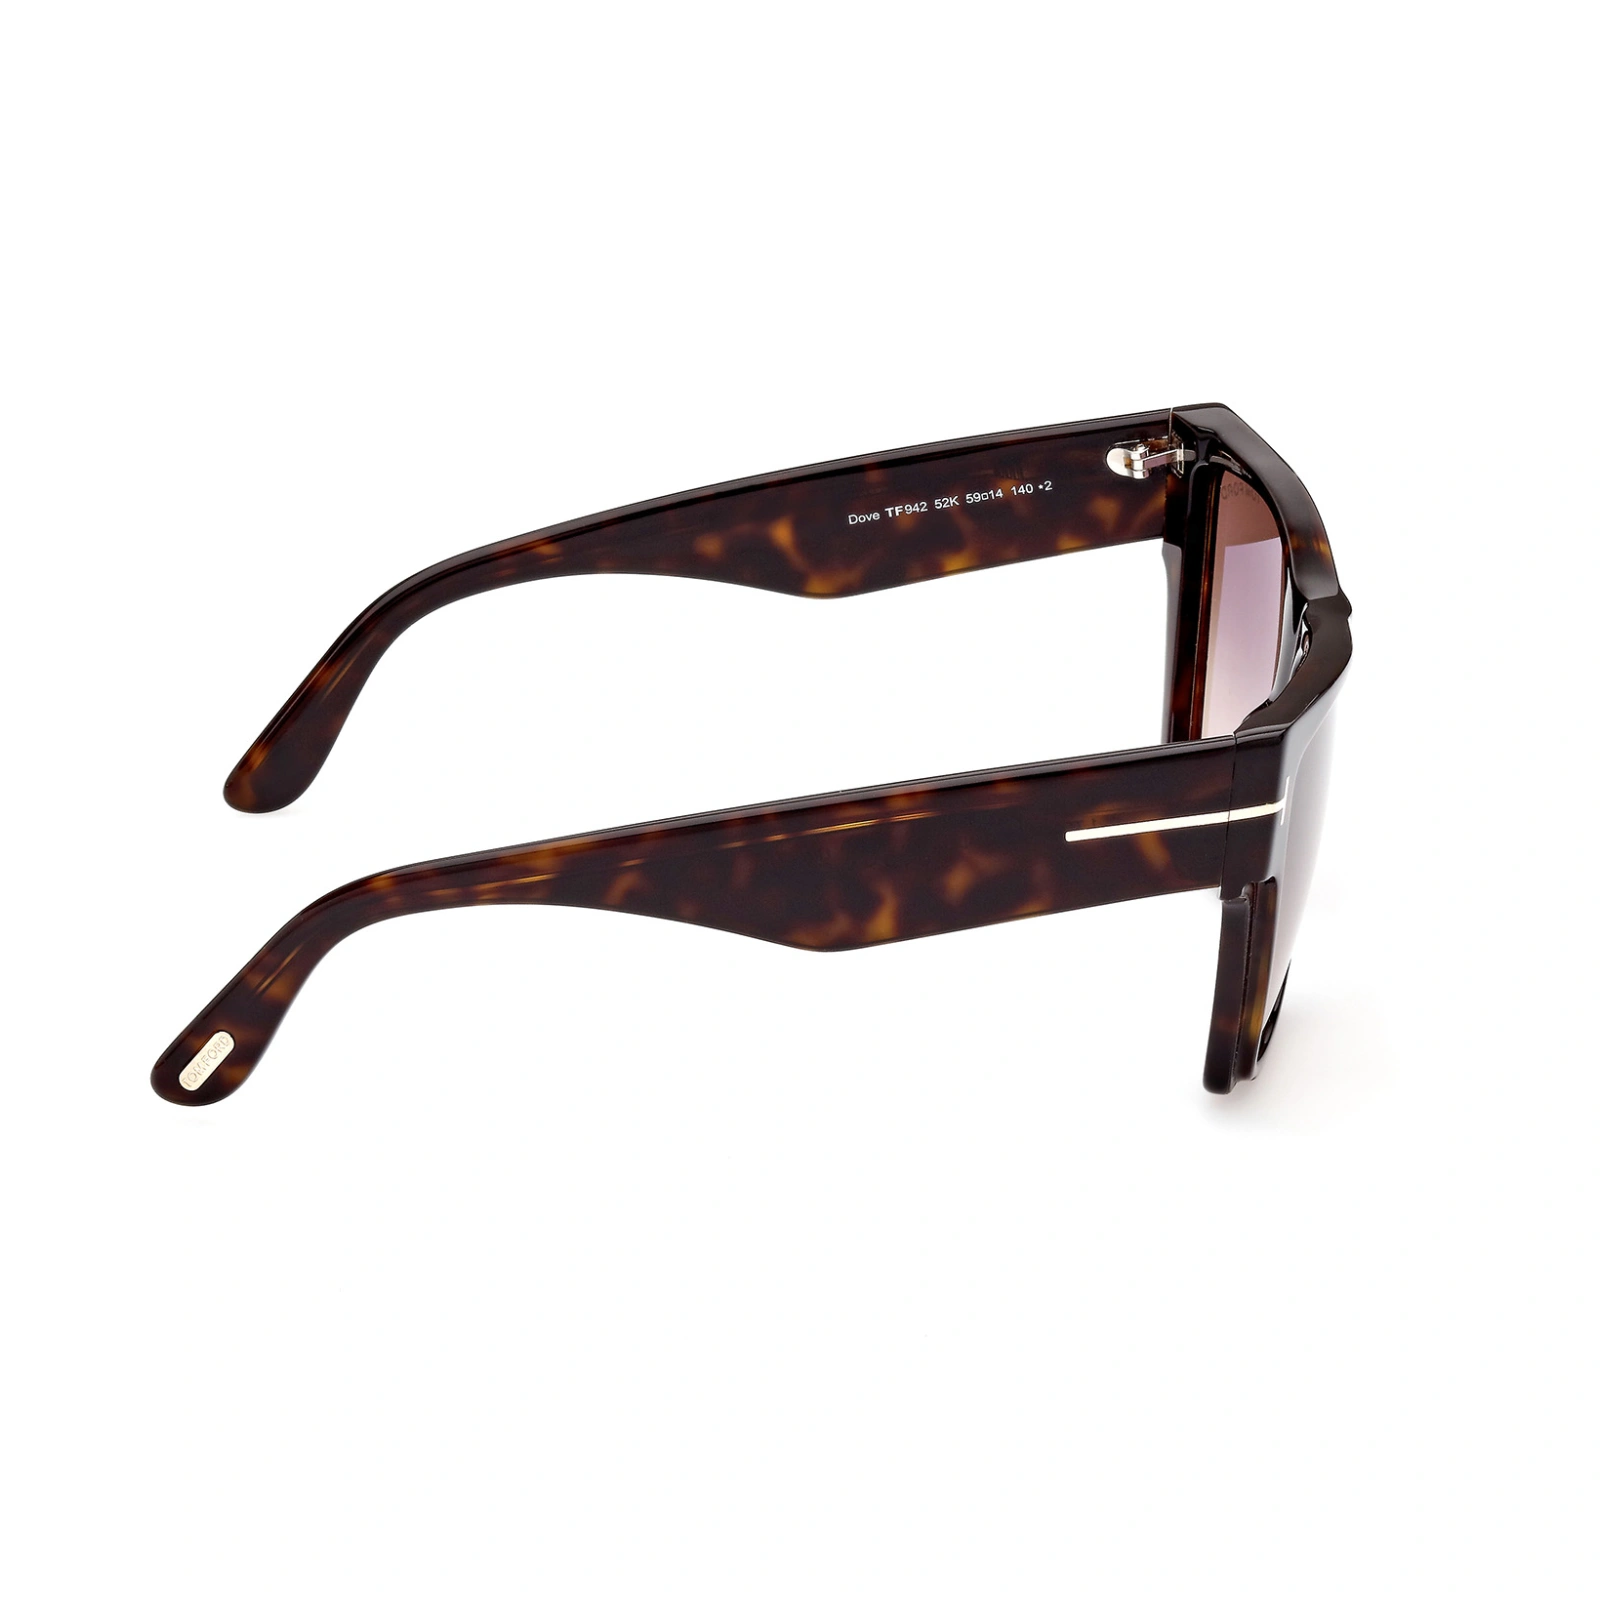 Tom Ford Sunglasses Tom Ford Sunglasses FT0942 52K 59mm Dove Eyeglasses Eyewear UK USA Australia 